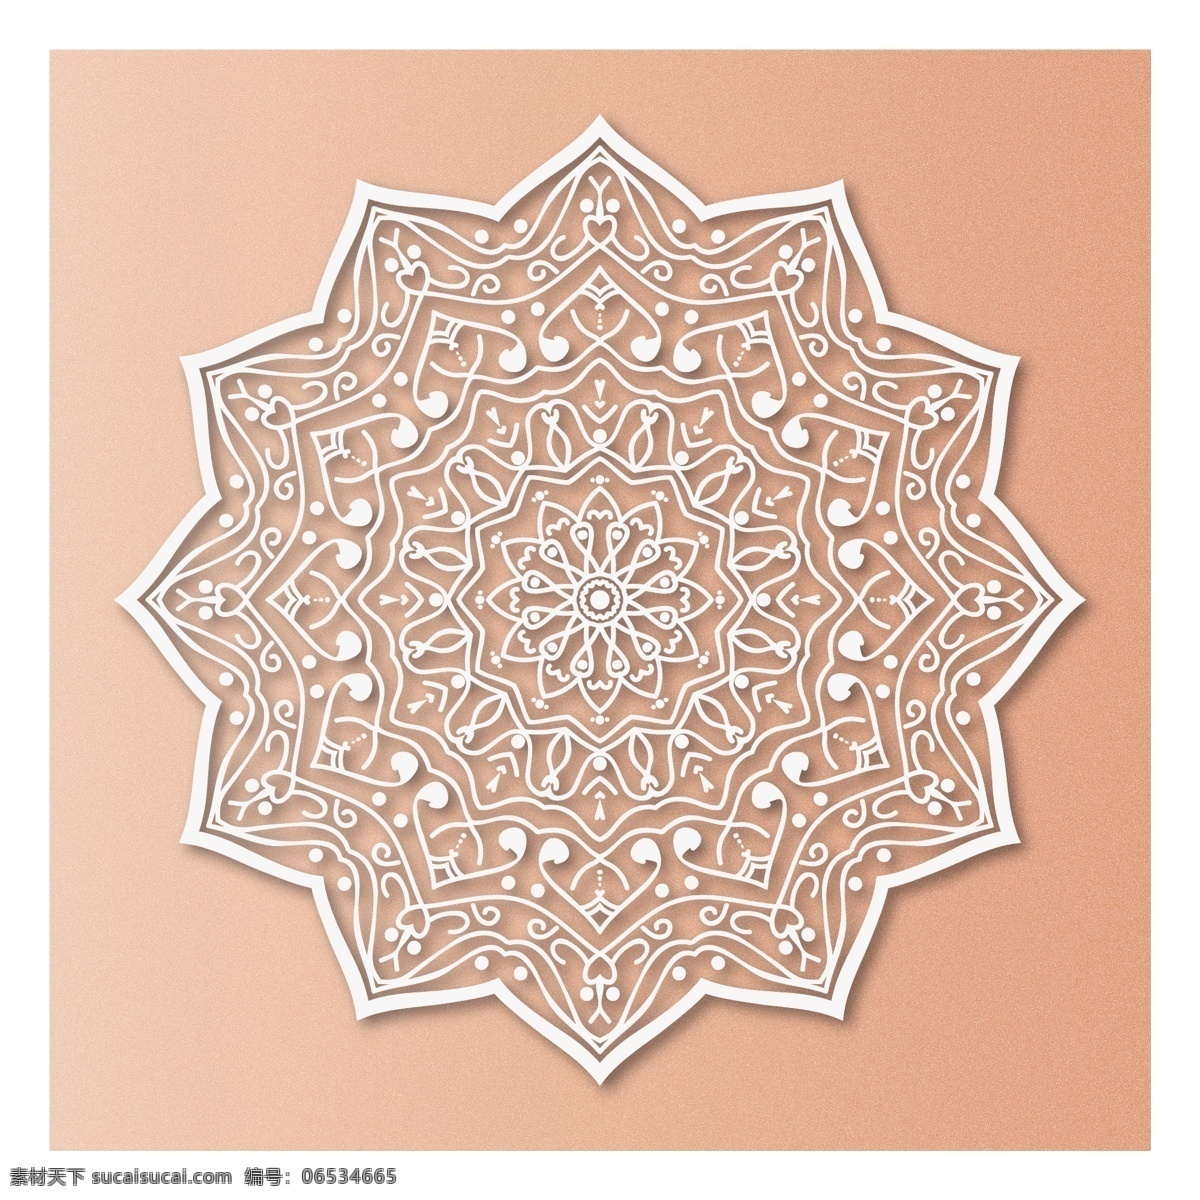 鲑鱼 背景 豪华 曼荼罗 花卉 抽象 装饰 阿拉伯 印度 形状 伊斯兰教 花卉装饰 东方 象征 抽象的形状 华丽